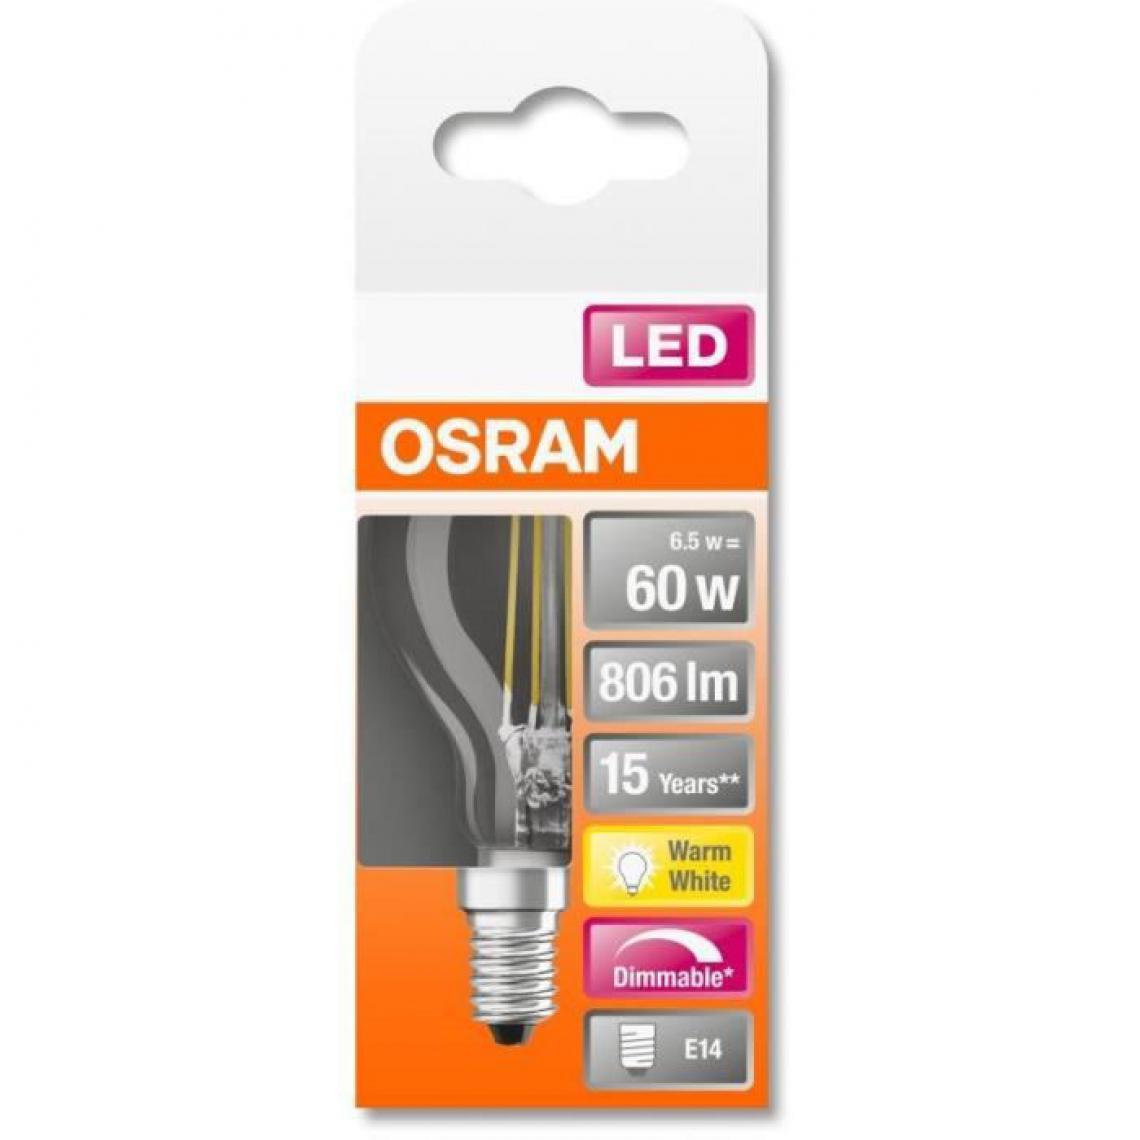 Osram - Ampoule LED Sphérique clair filament variable - 6,5W - Ampoules LED